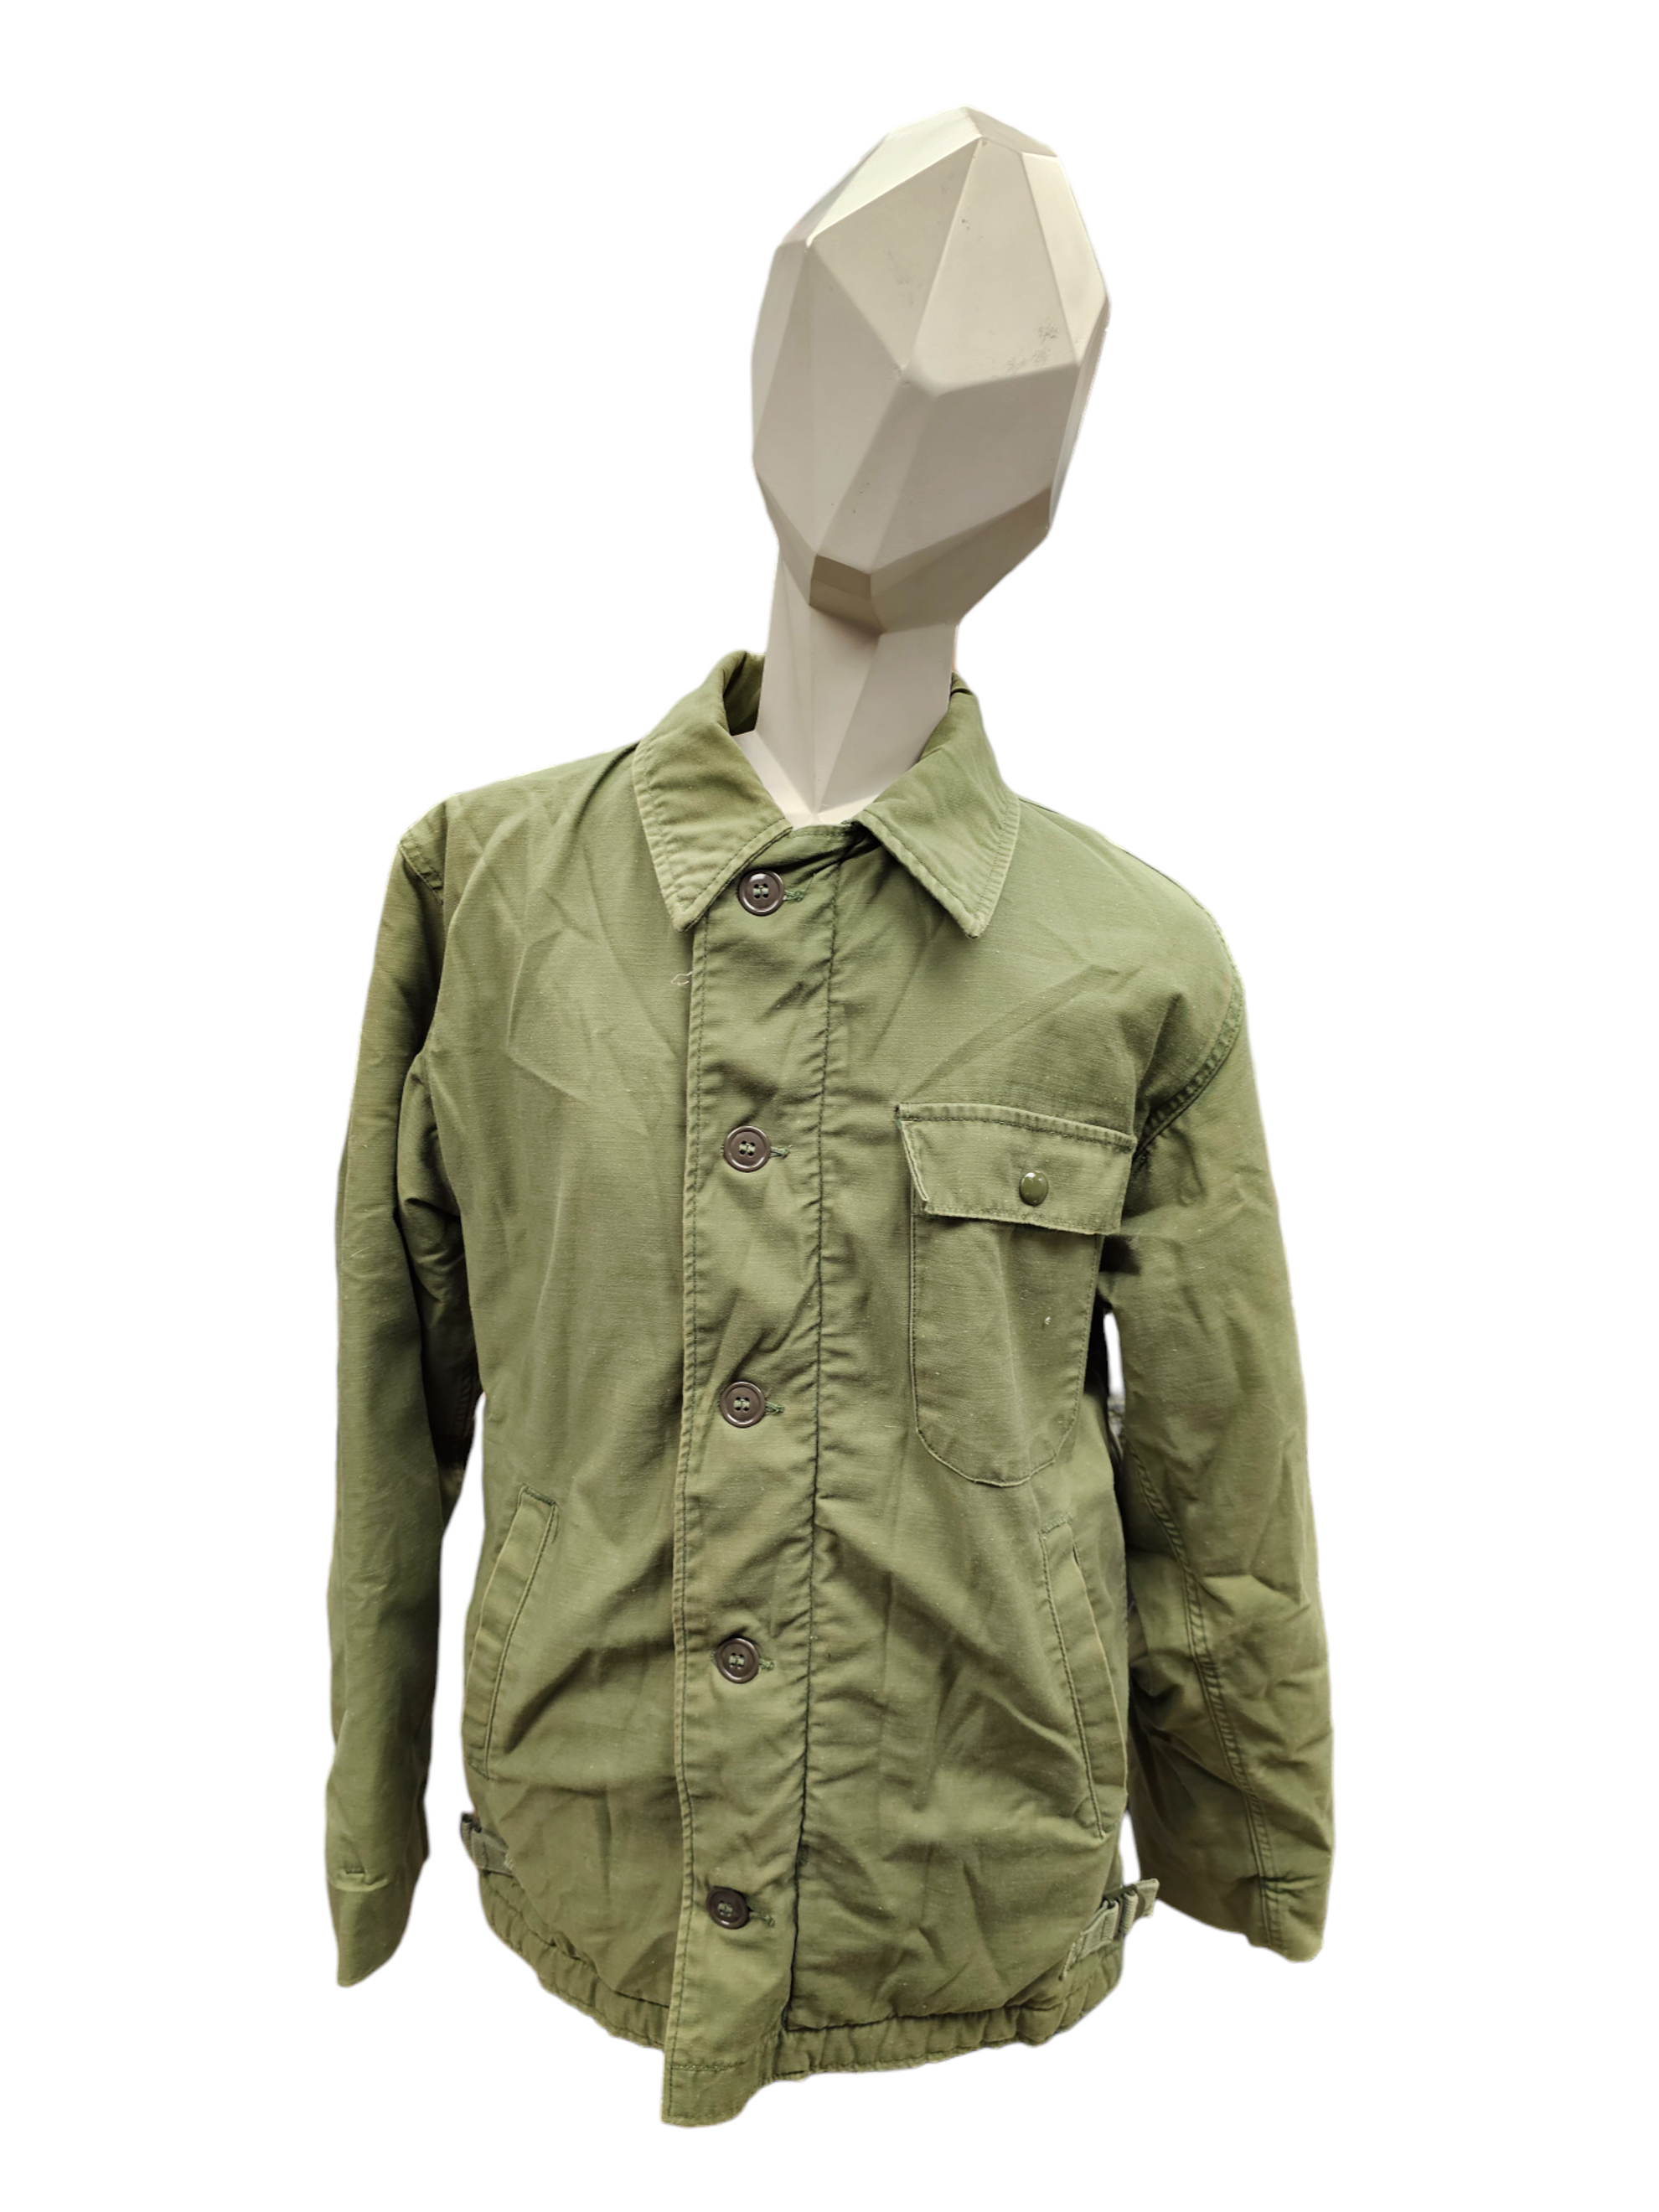 Vintage U.S. Armed Forces Cold Weather Deck Jacket